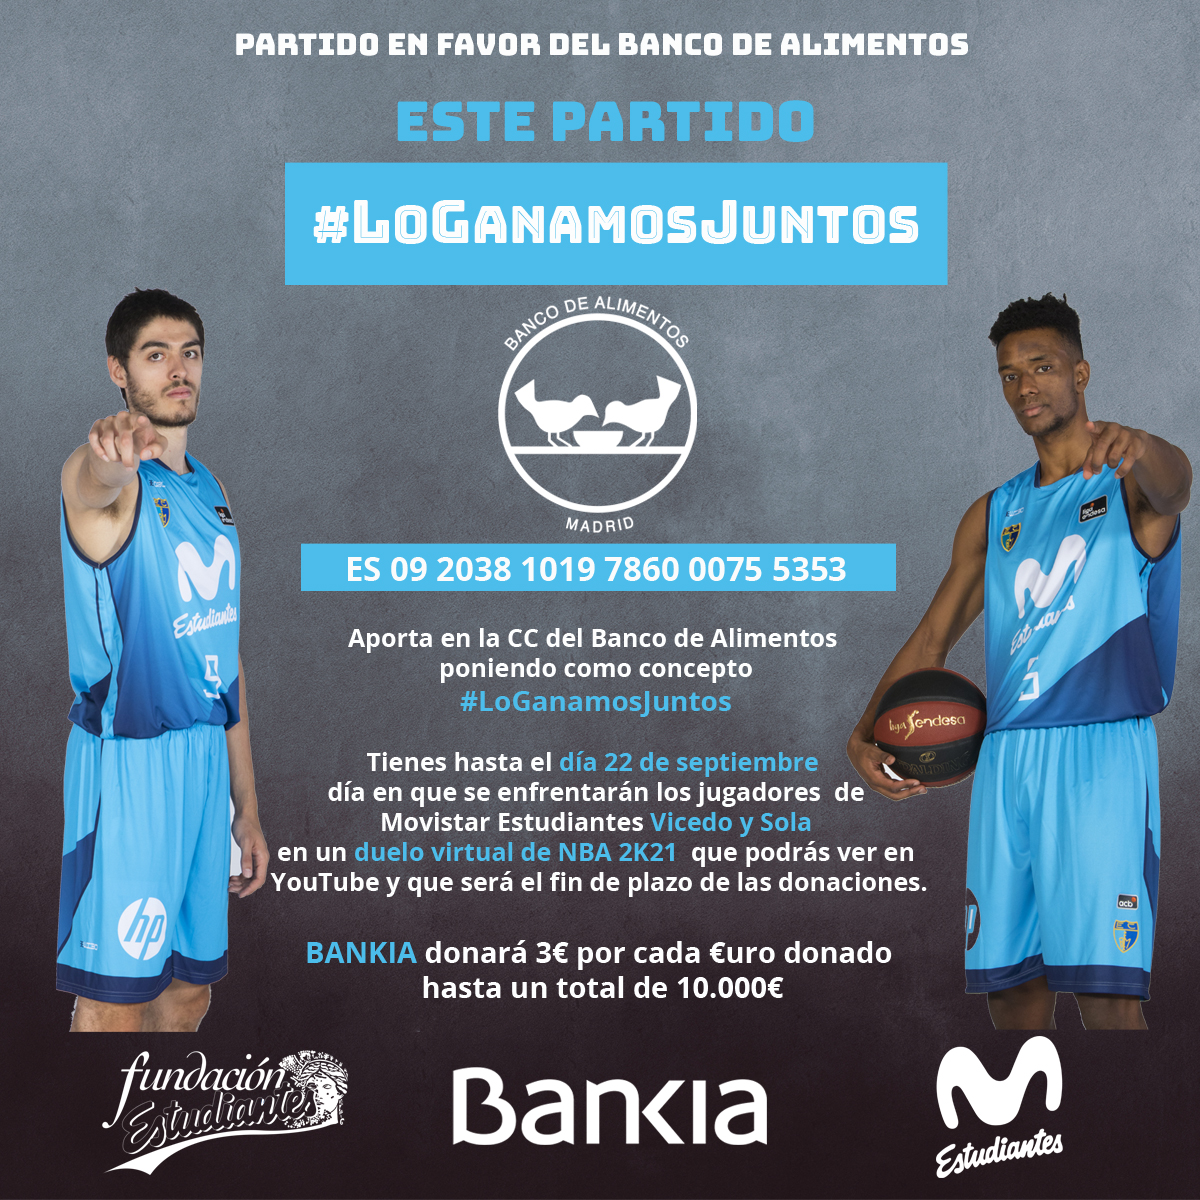 Bankia y Fundacion Estudiantes recaudan fondos en favor del Banco de Alimentos con un partido de baloncesto virtual